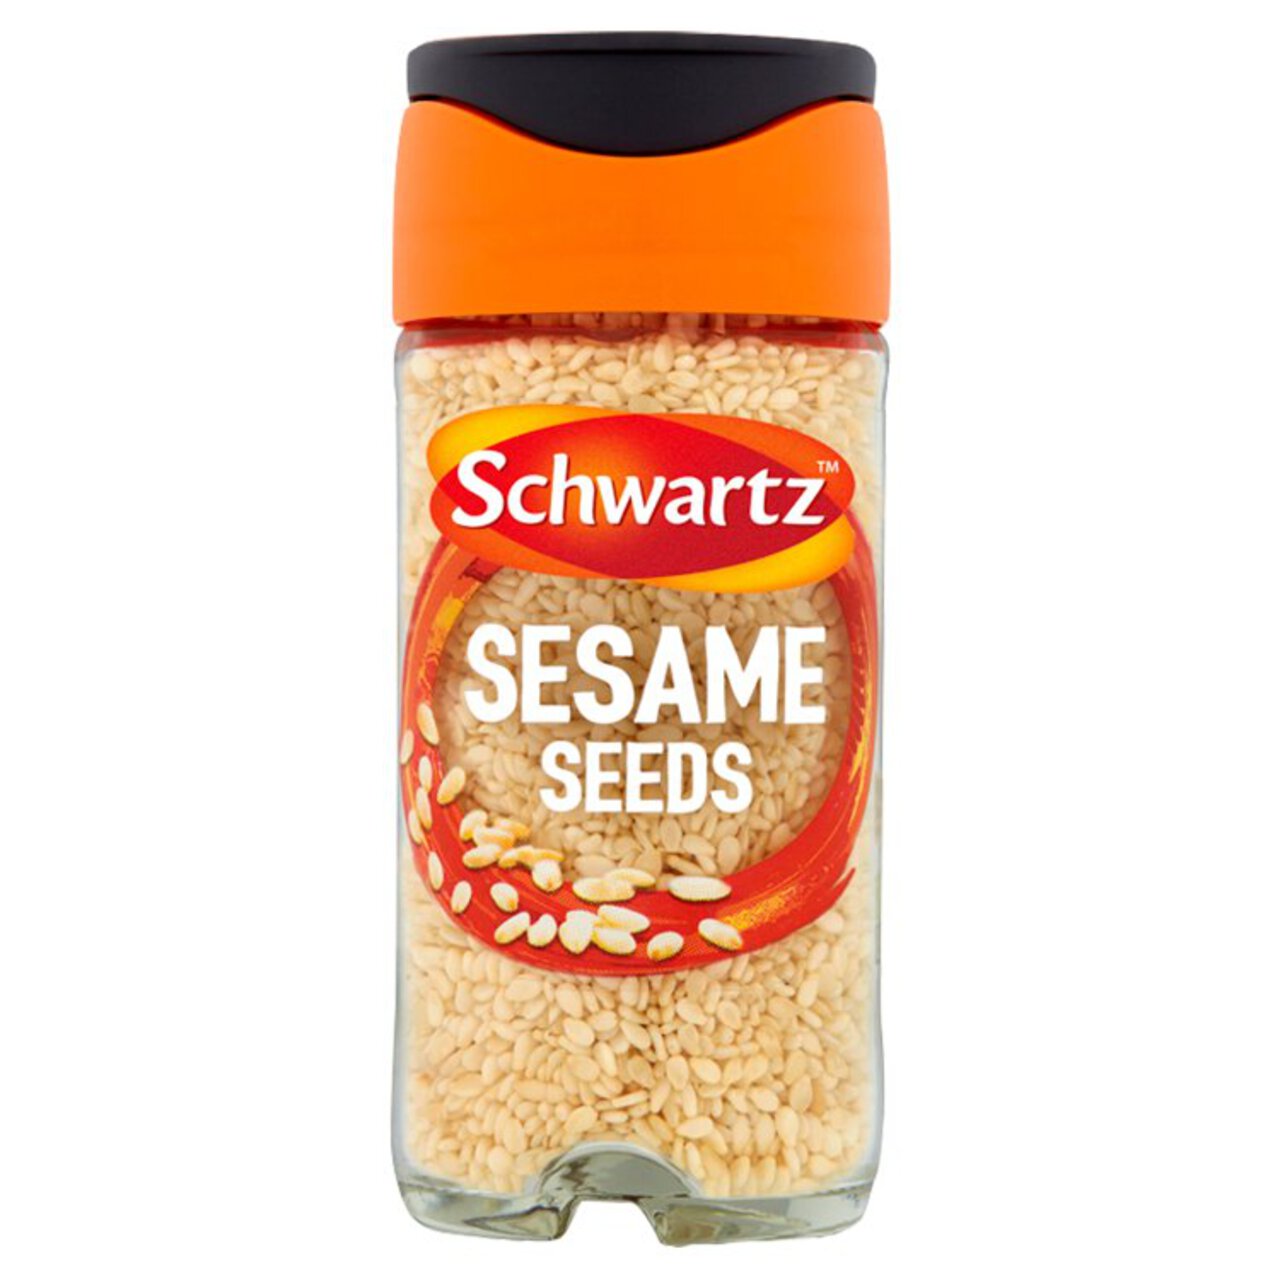 Schwartz Sesame Seeds Jar 43g